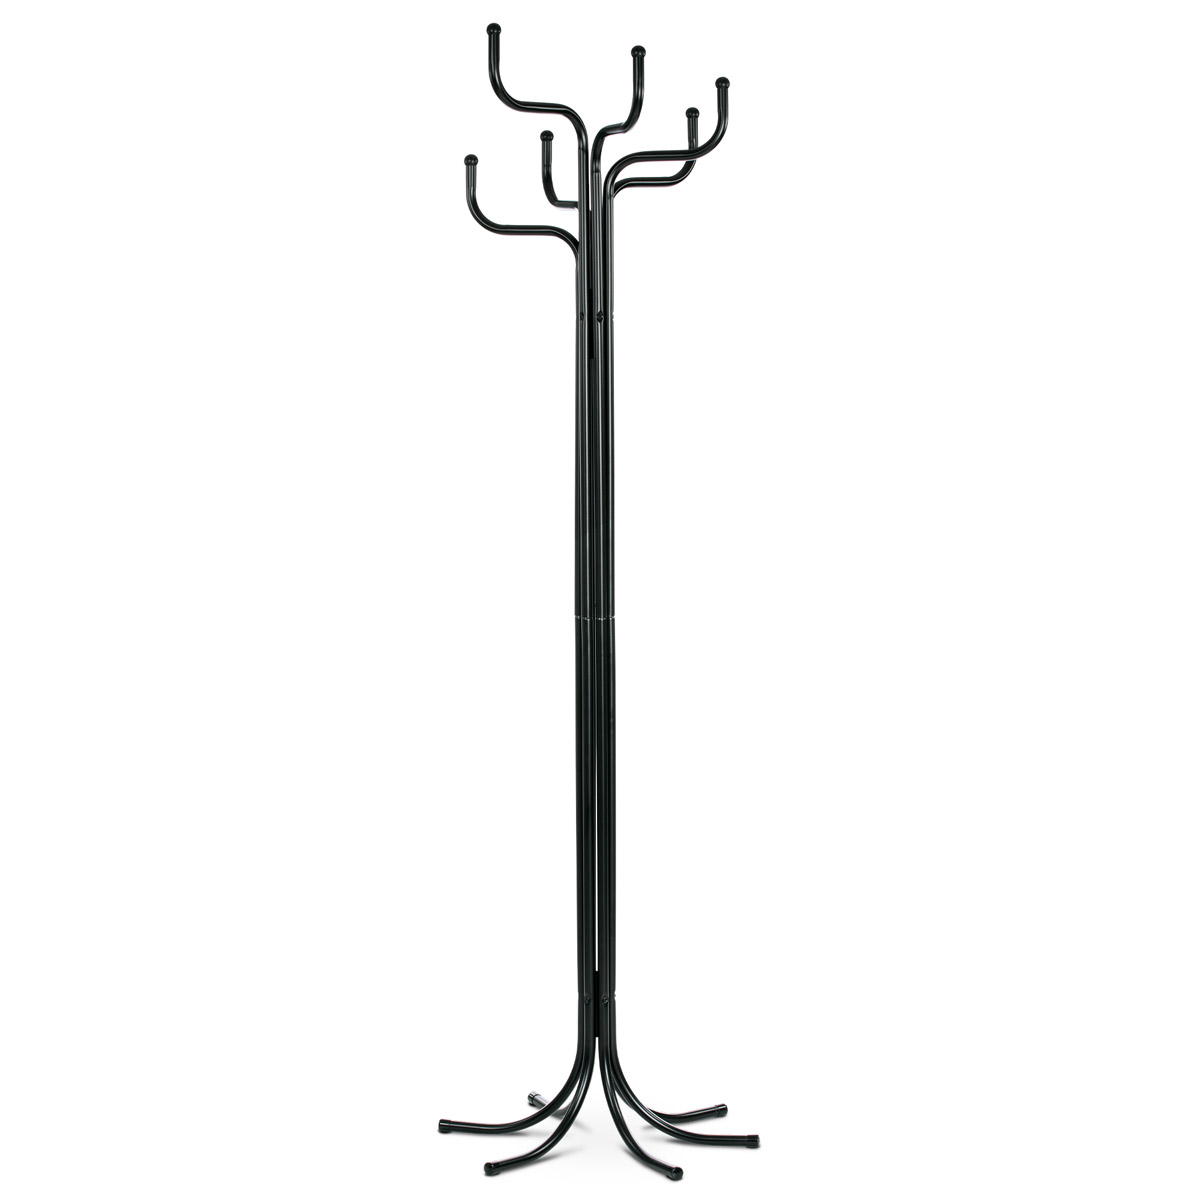 Stojanový vešiak, výška 187 cm, kovová konštrukcia, čierny matný lak